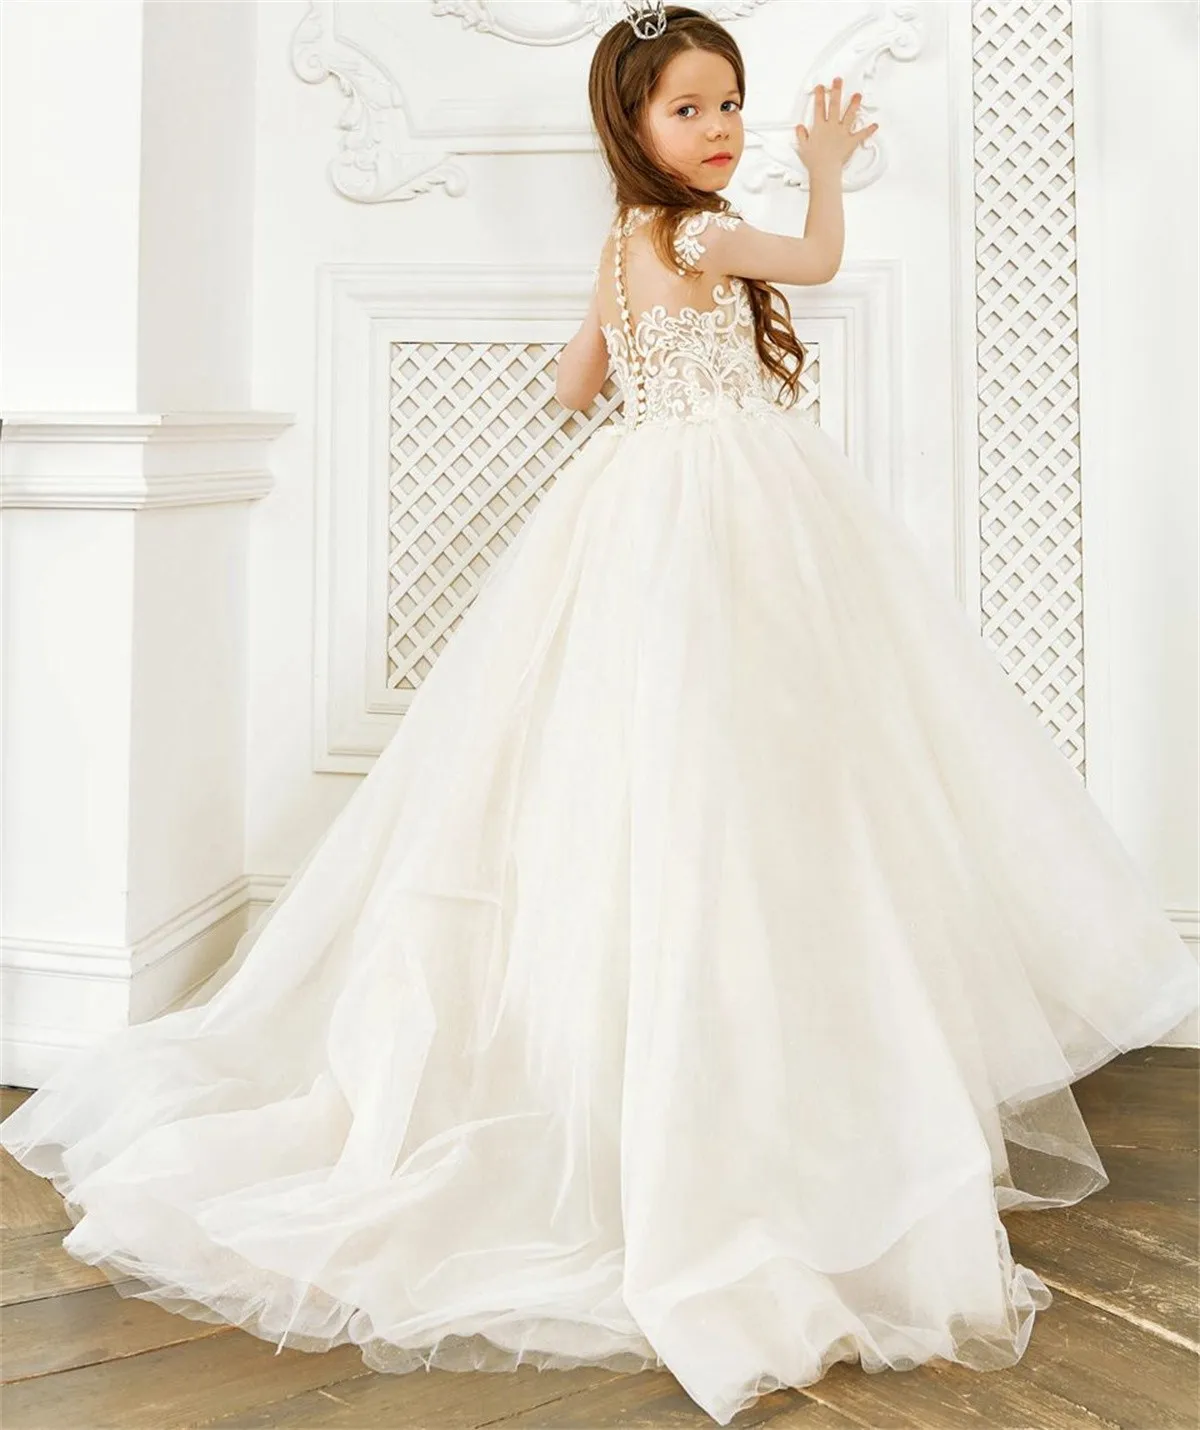 

Elegant Tulle Fluffy Applique Sleeveless Flower Girl Dress For Wedding Princess Communion Birthday Celebration Party Dresses